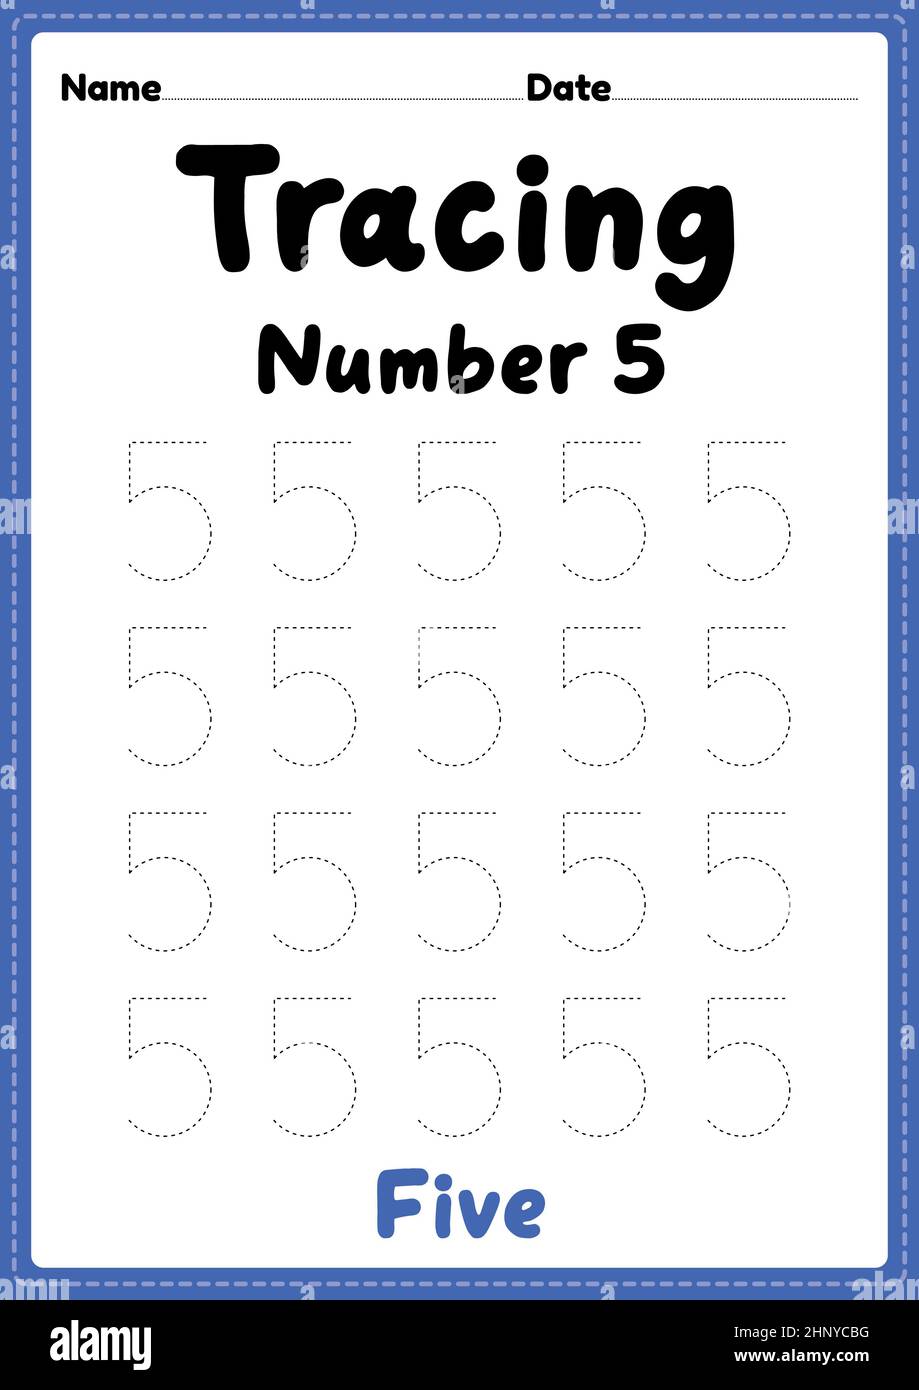 Tracing Nummer 3 Arbeitsblatt für Kindergarten, Vorschule und Montessori  Kinder für das Lernen von Zahlen und Handschriften Praxis Aktivitäten  Stockfotografie - Alamy